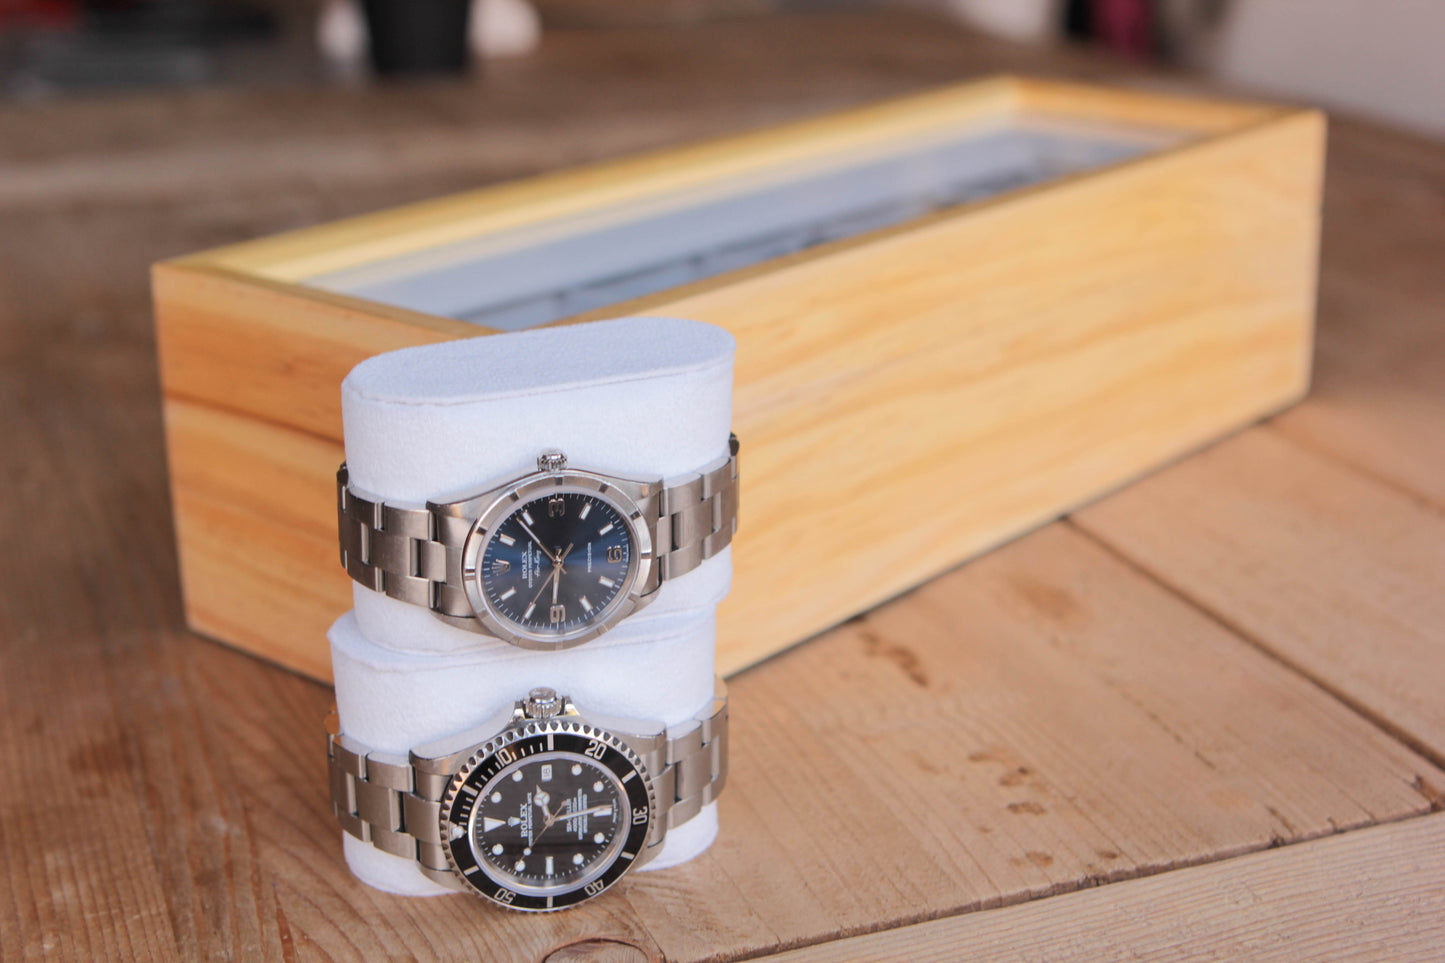 Scatola degli orologi in legno di pino - 6 slot